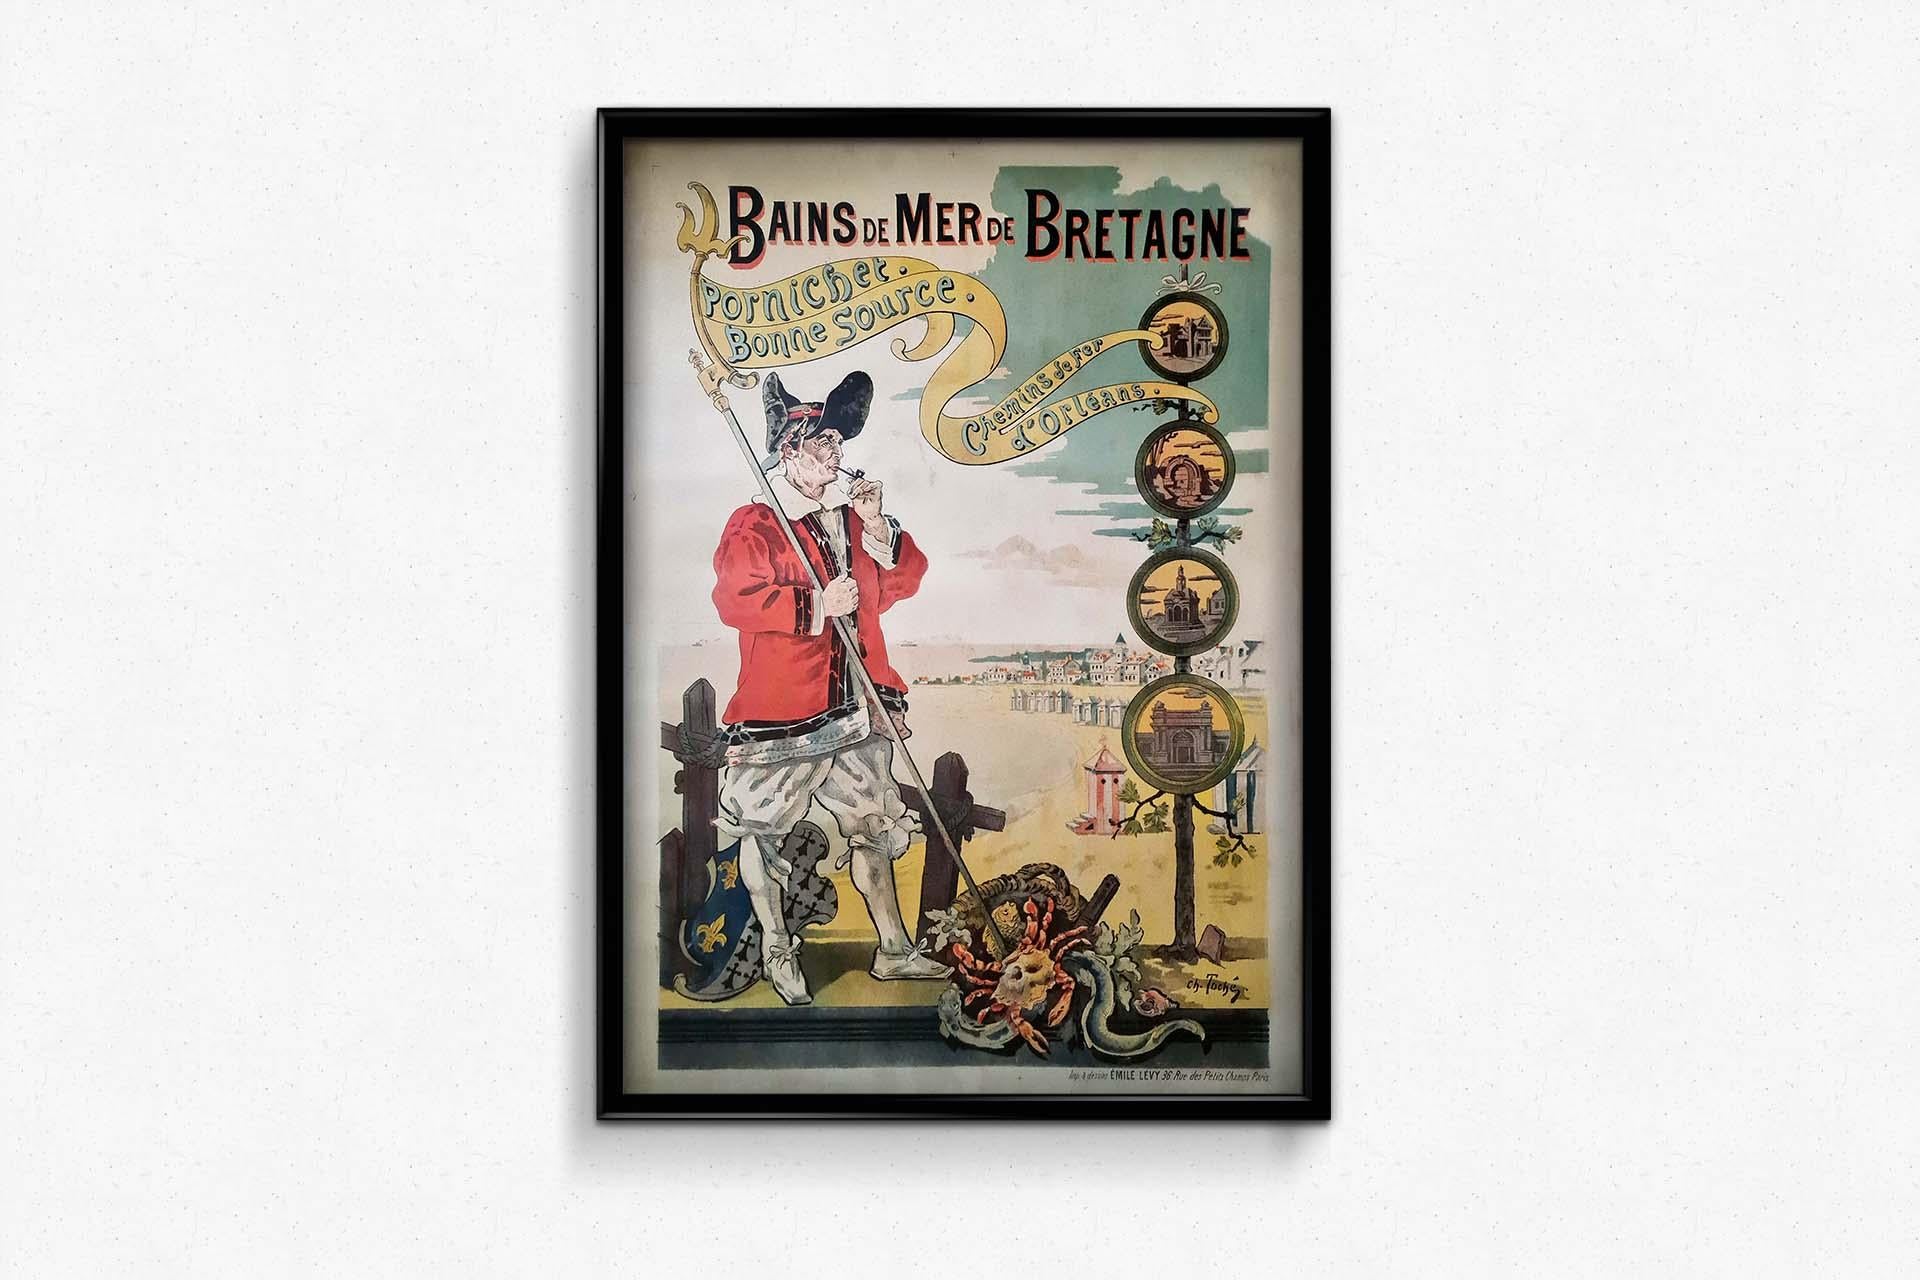 1892 Original poster for Chemins de fer d'Orléans : Bains de Bretagne Pornichet 2